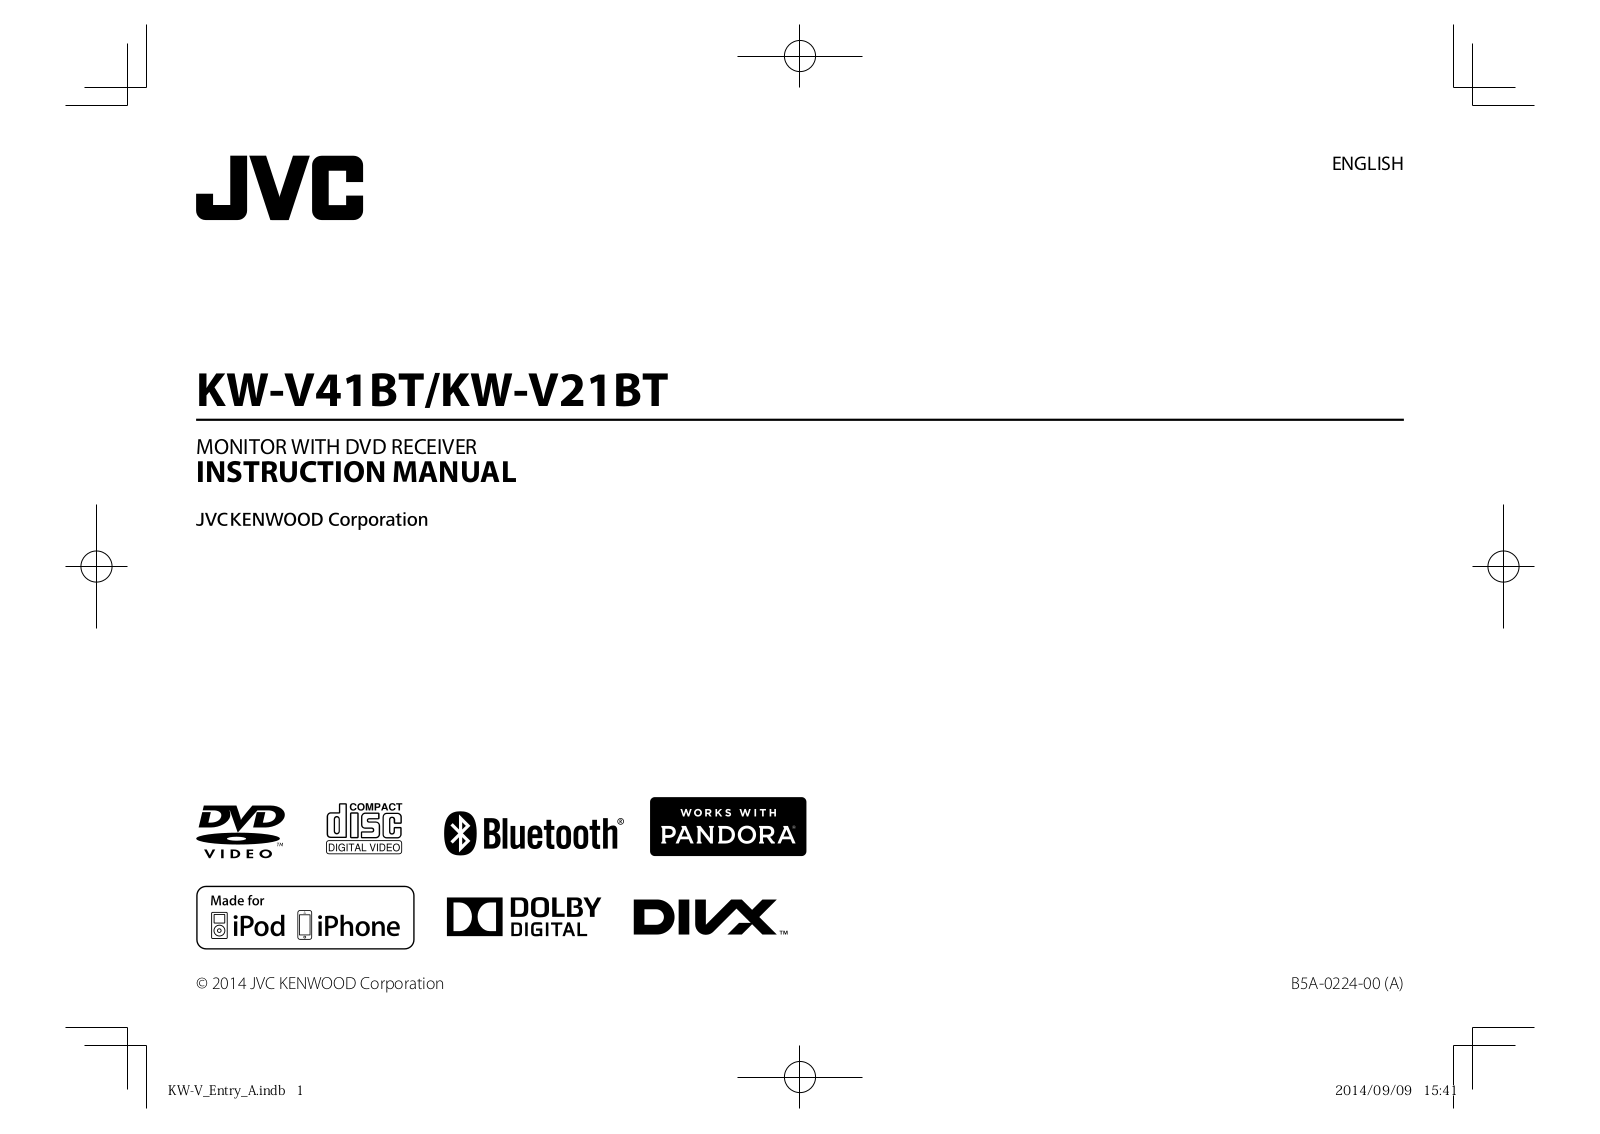 Jvc KW-V41BT, KW-V21BT User Manual